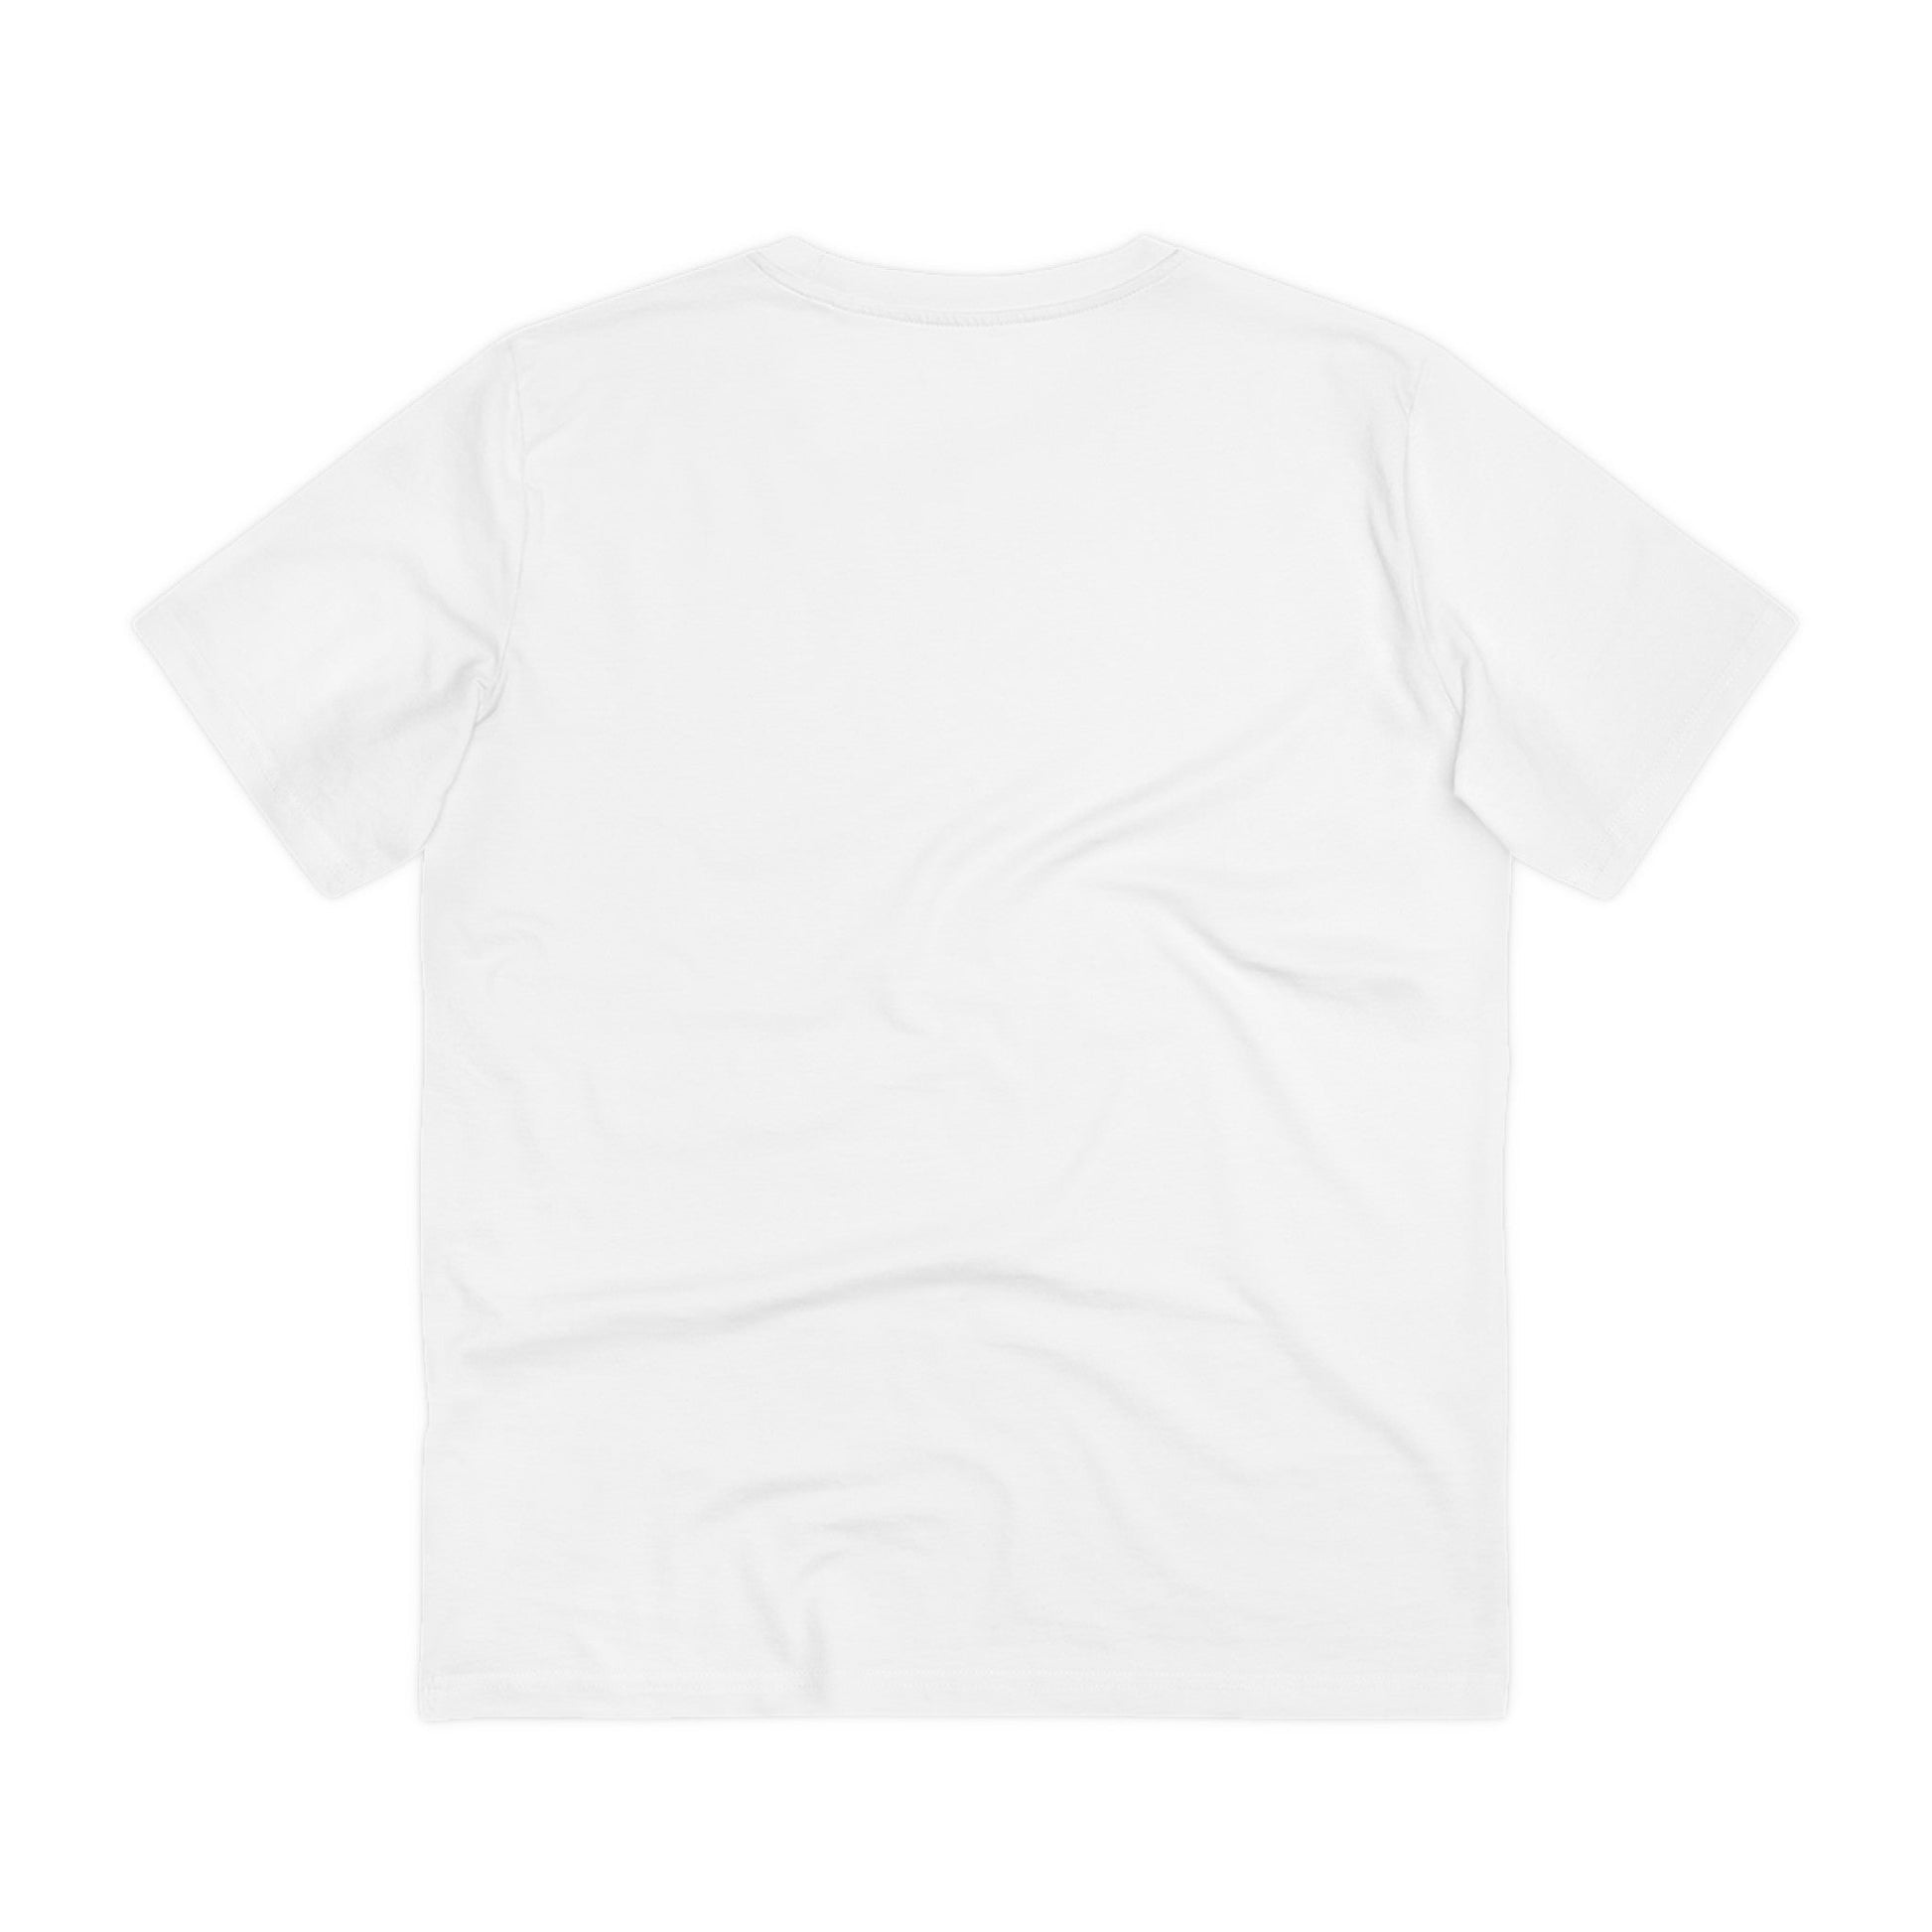 Printify T-Shirt Unicorn vs Butcher - Unicorn World - Front Design